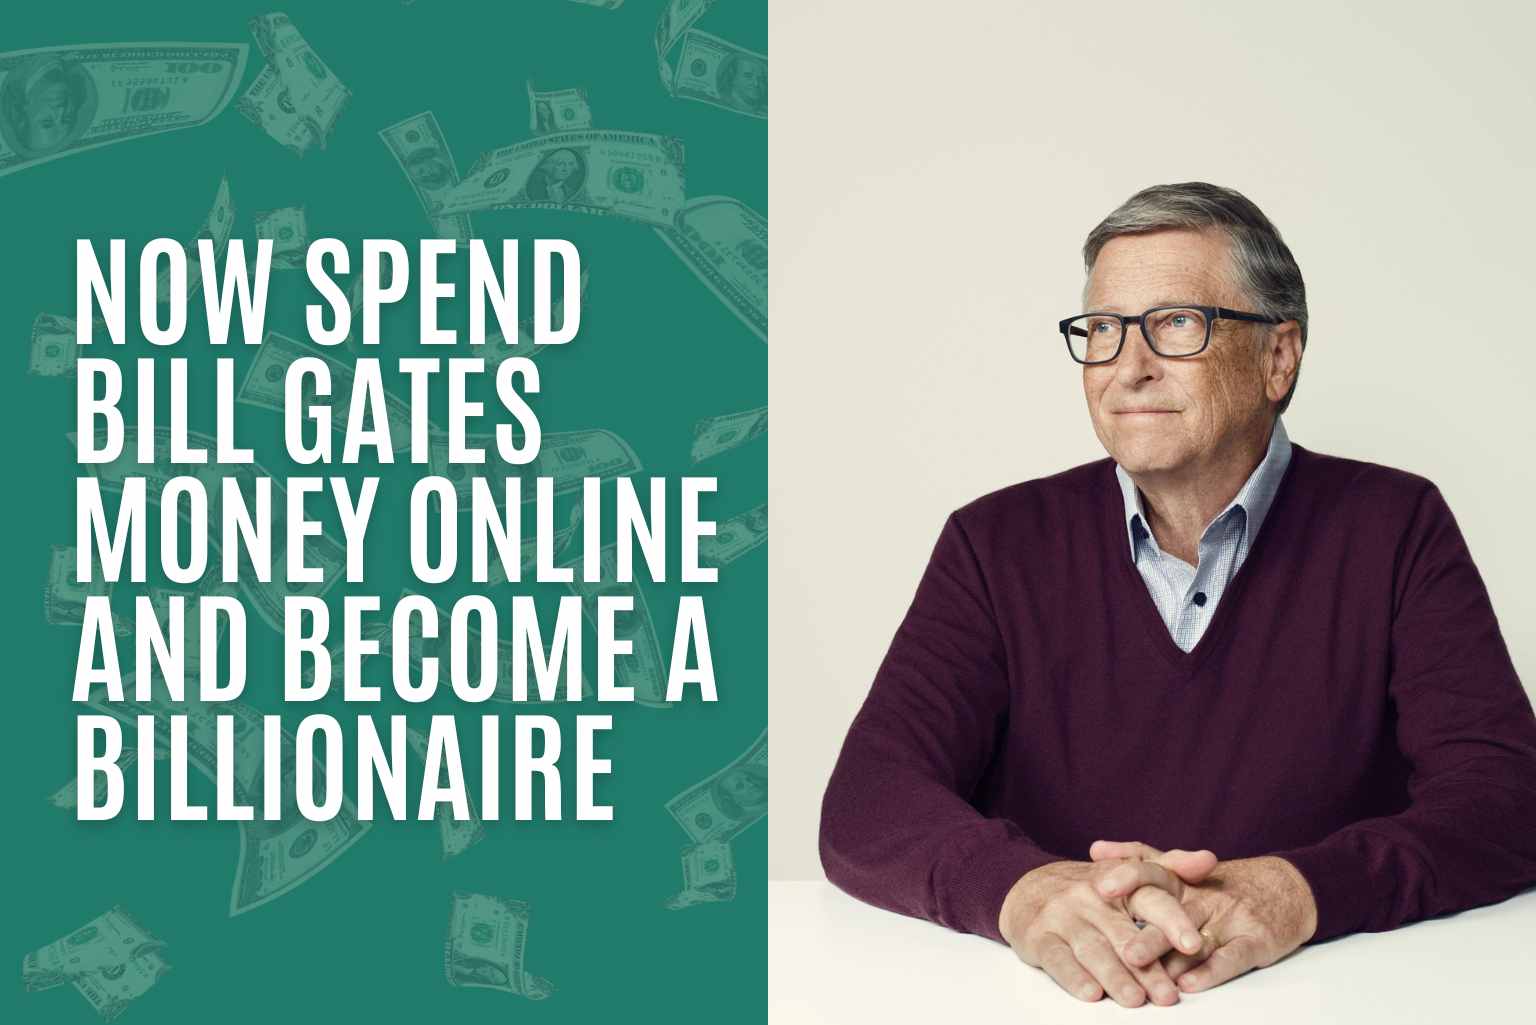 Spend Bill Gates' Money Online